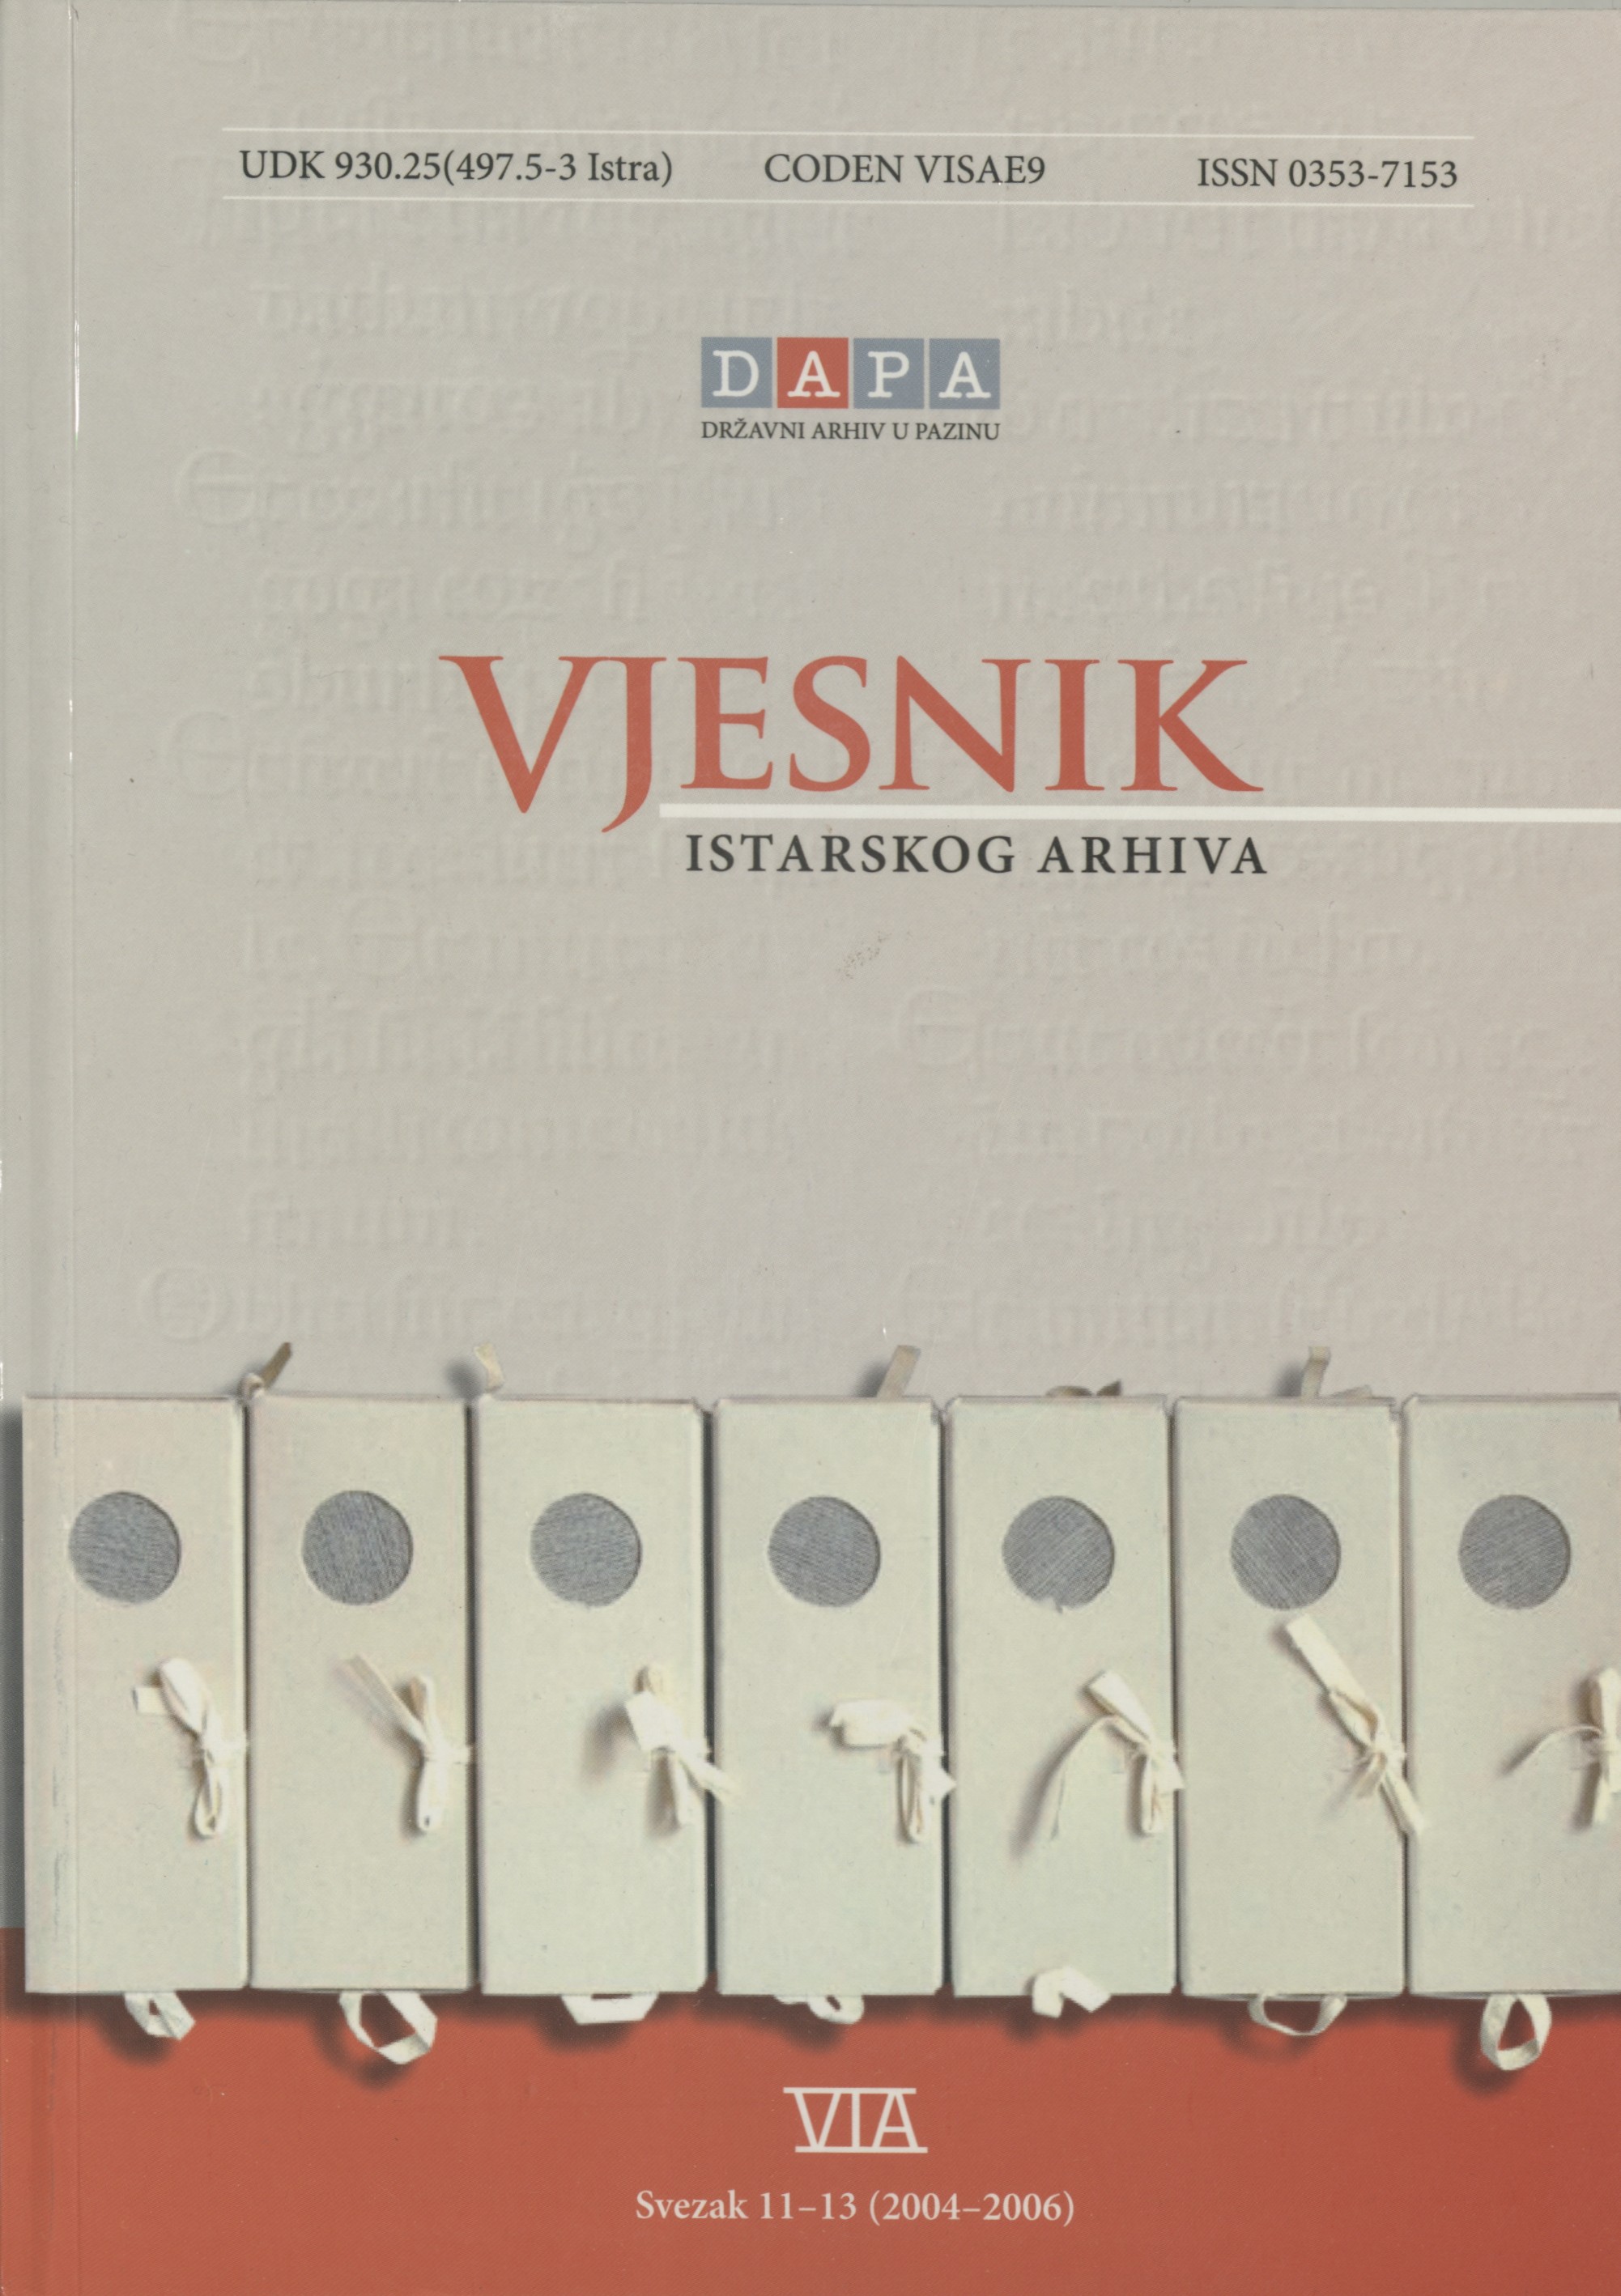 					Pogledaj Vjesnik istarskog arhiva sv. 11-13 (2004.-2006.)
				